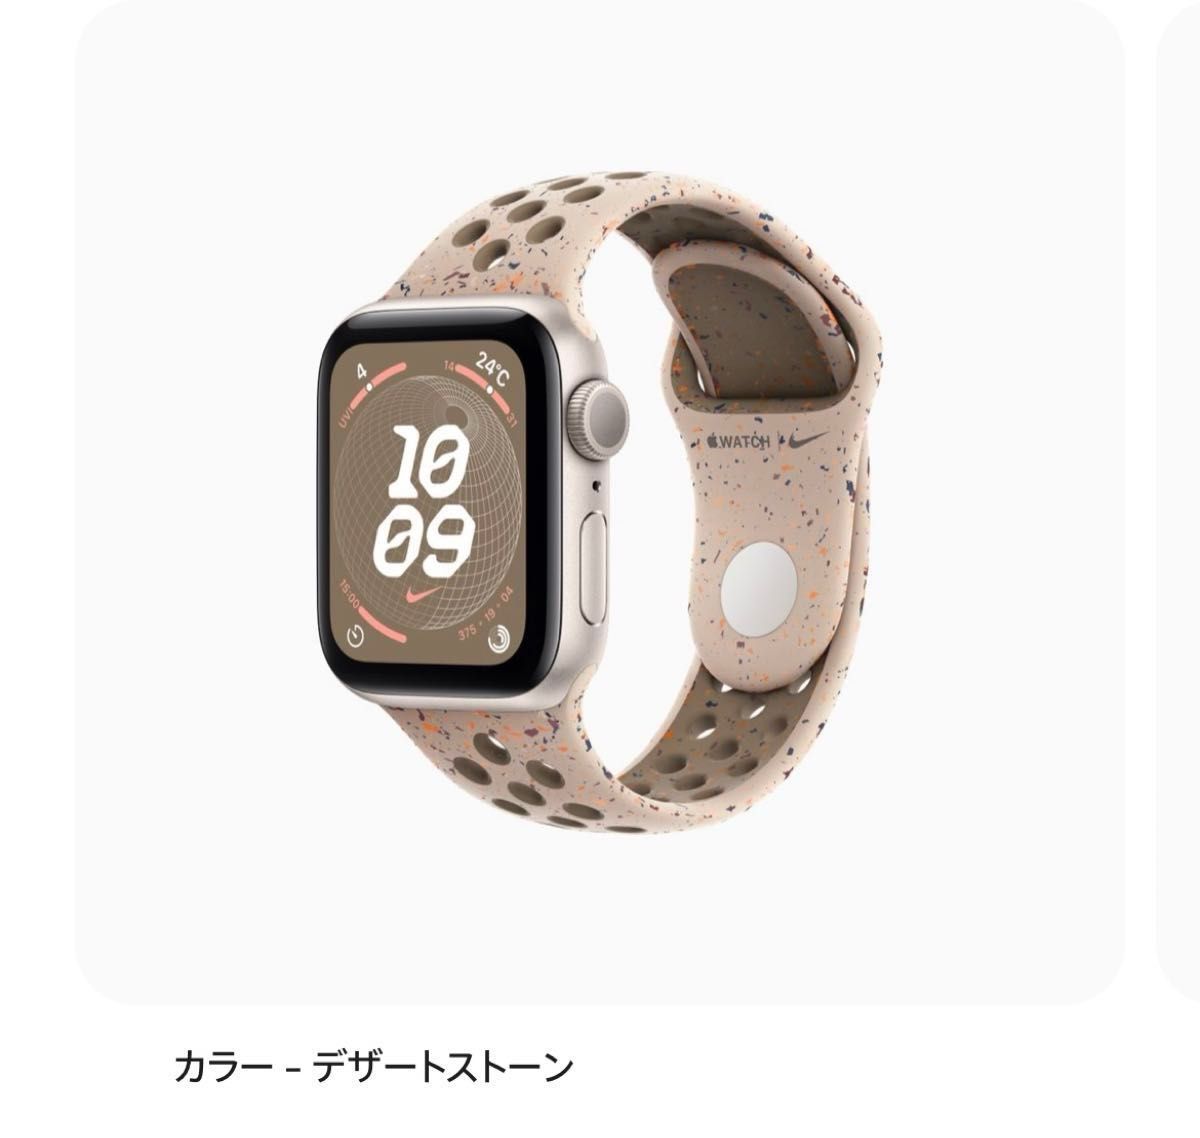 Apple Watch SE (GPSモデル)40mmスターライトアルミニウムとデザートストーンNikeスポーツバンド S/M